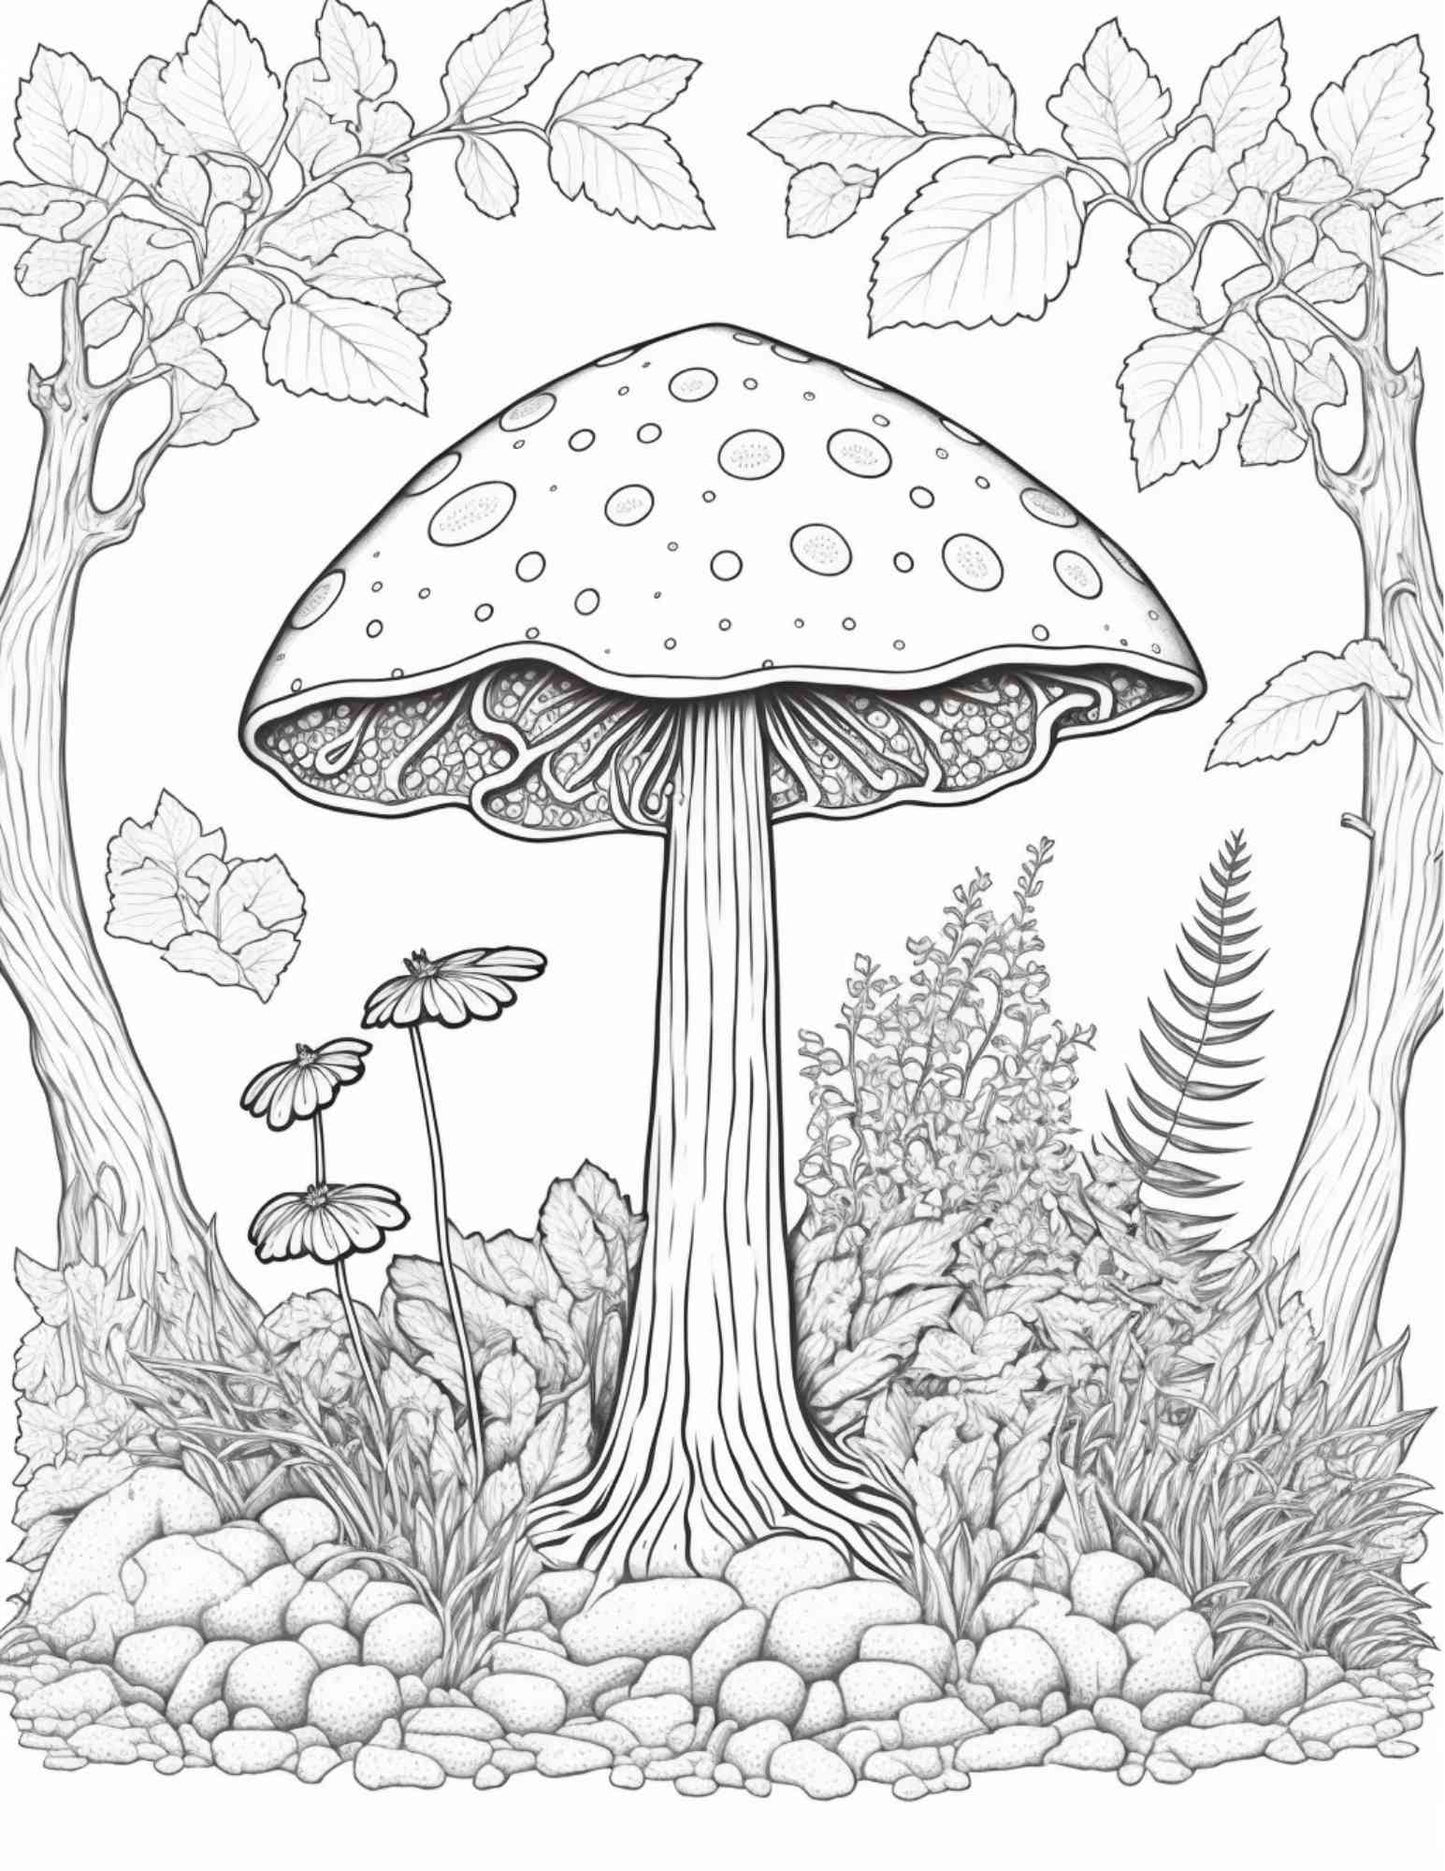 100 pages de coloriage de forêt de champignons imprimables pour adultes et enfants, livre de coloriage en niveaux de gris, fichier PDF imprimable Téléchargement immédiat